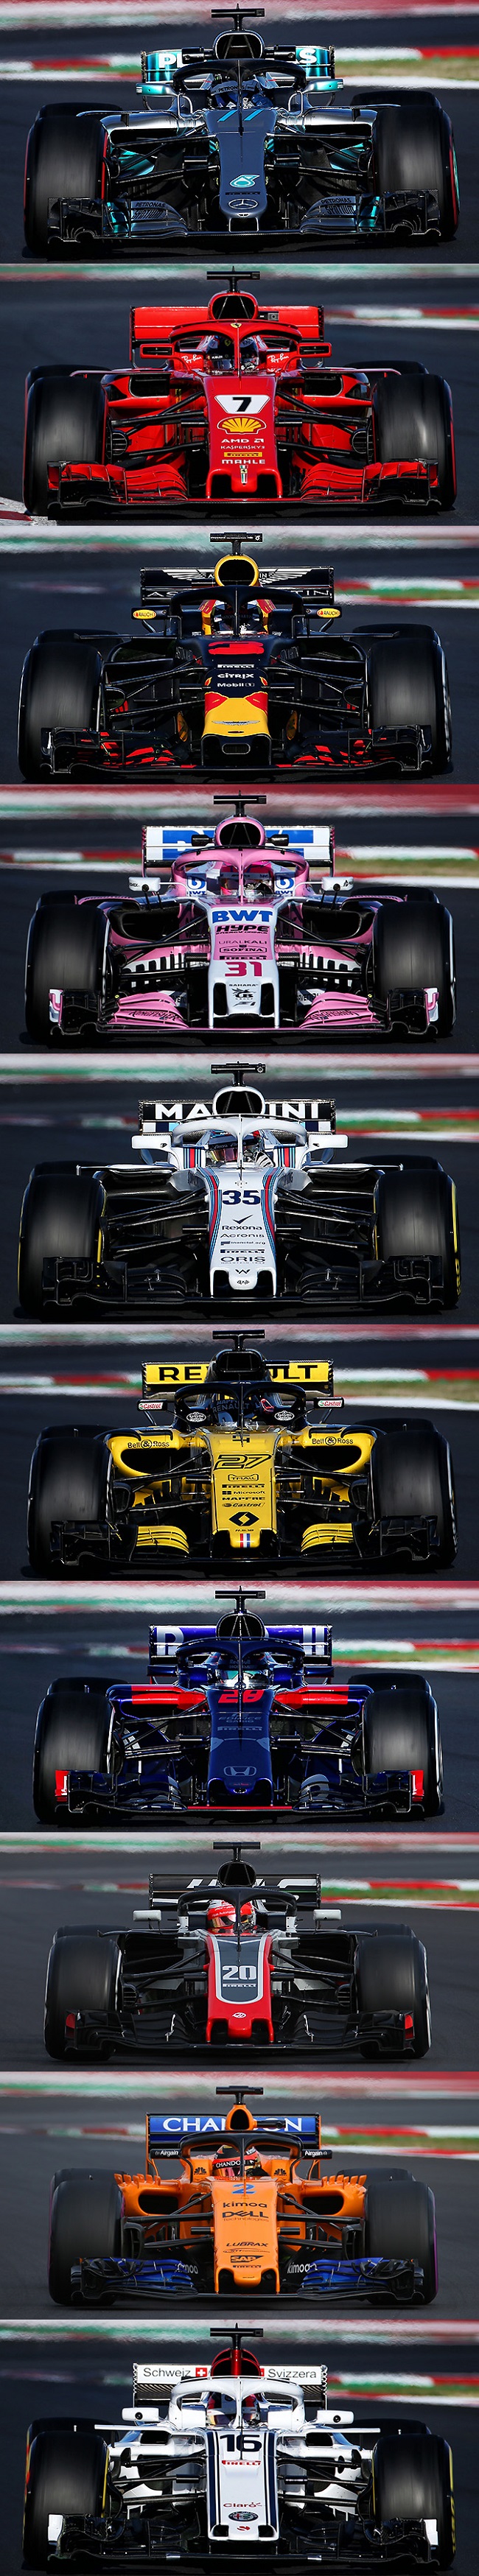 F1 18 全チームのマシン画像並べて比較 レッドブルのサイドポンツーン薄すぎ F1モタスポgp Com